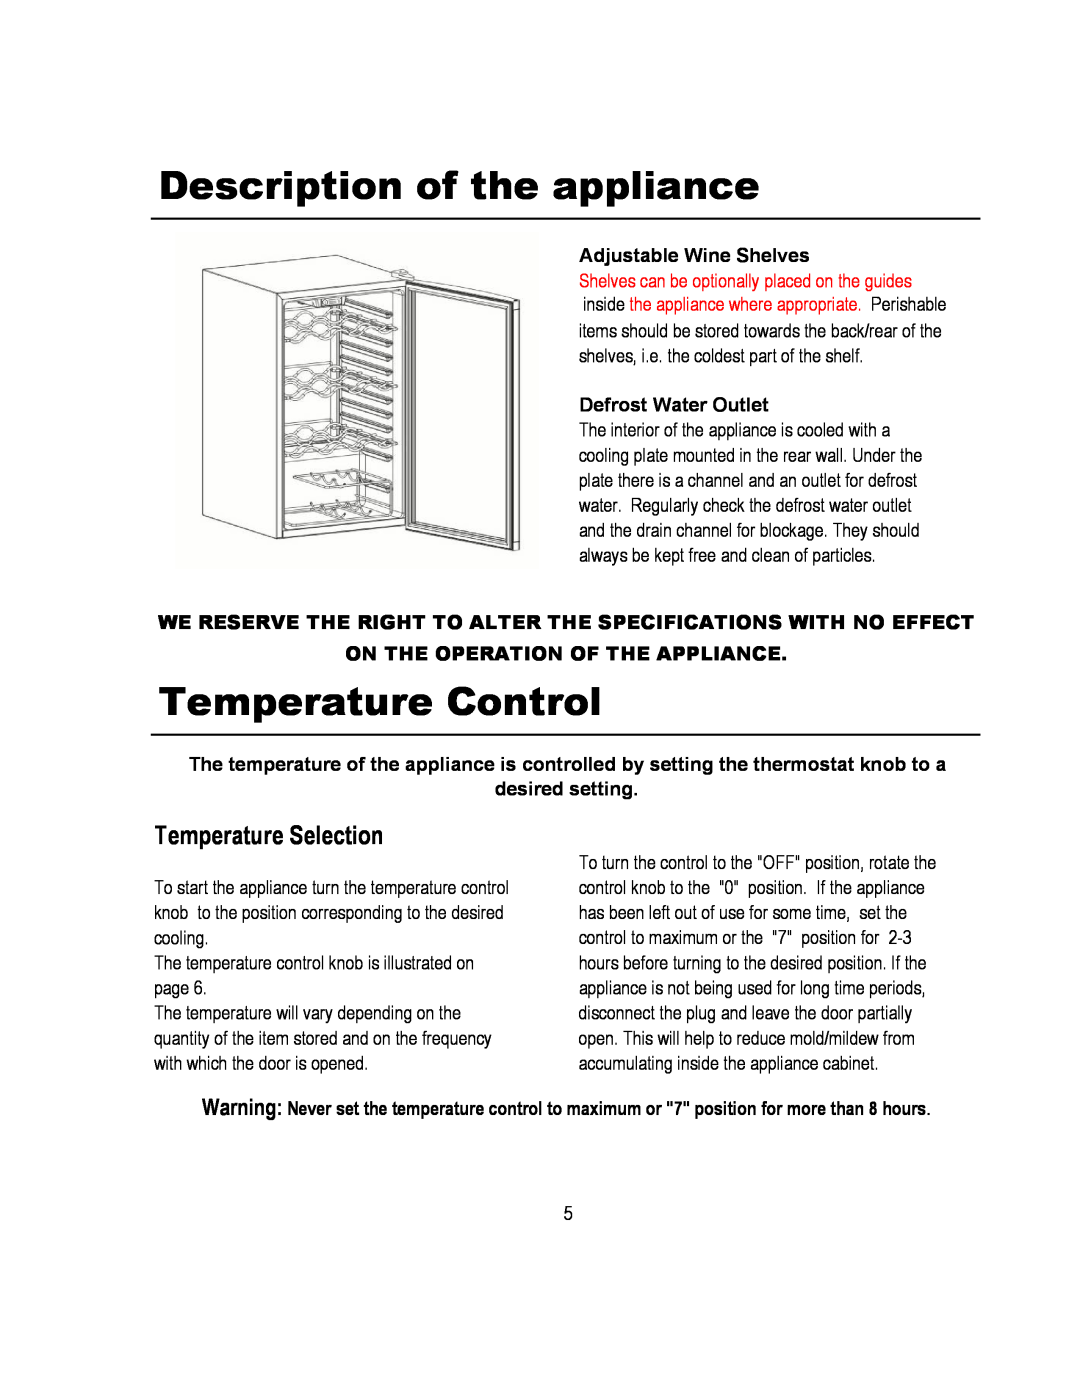 Magic Chef MCWC52B warranty Description of the appliance, Temperature Control, Temperature Selection 